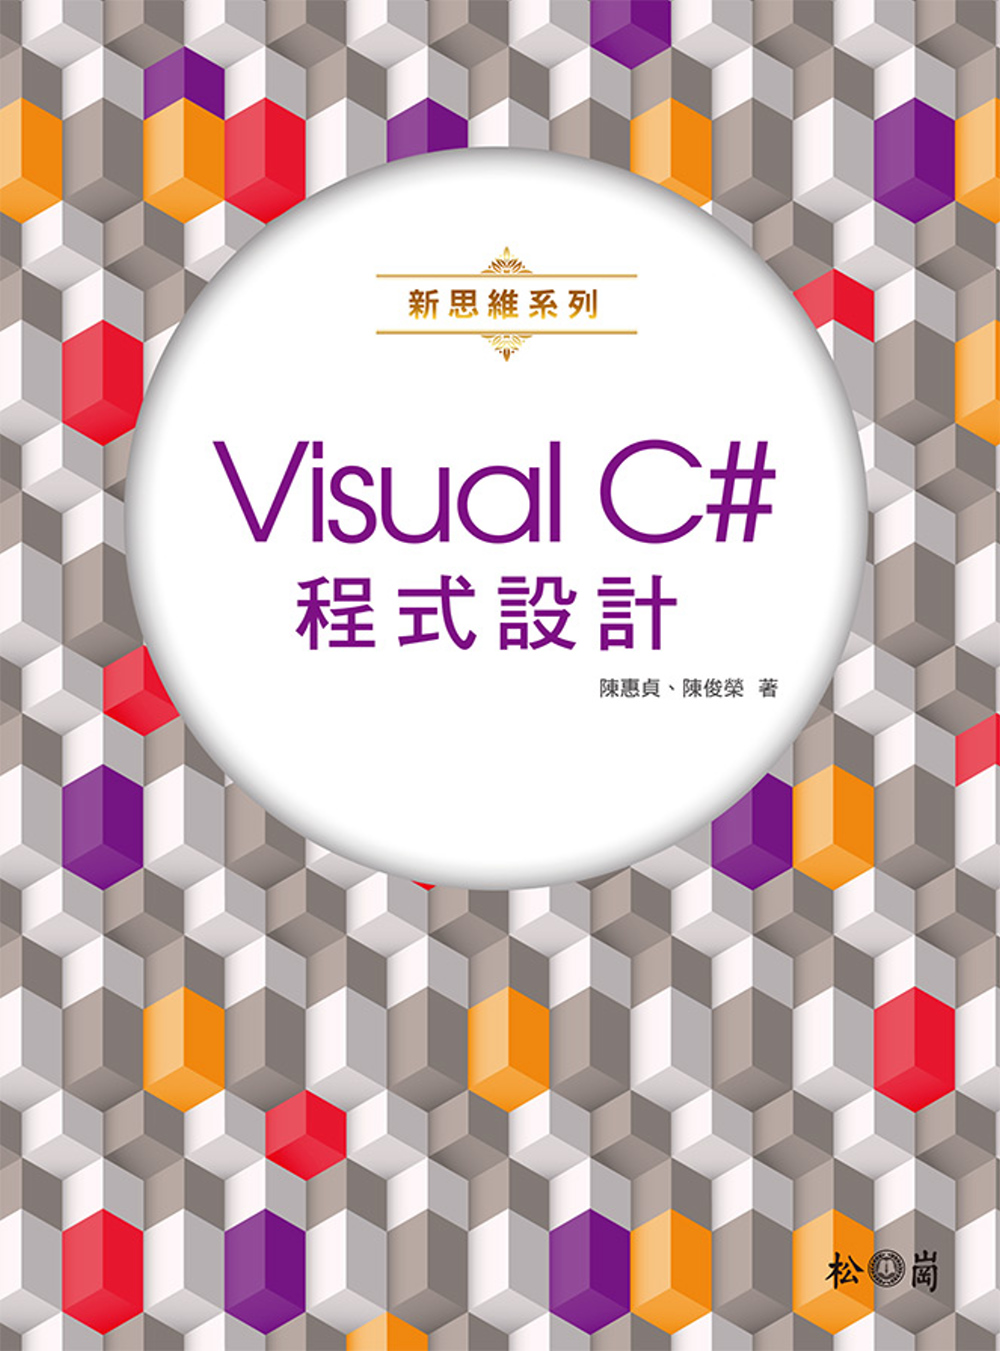 新思維系列 Visual C# 程式設計